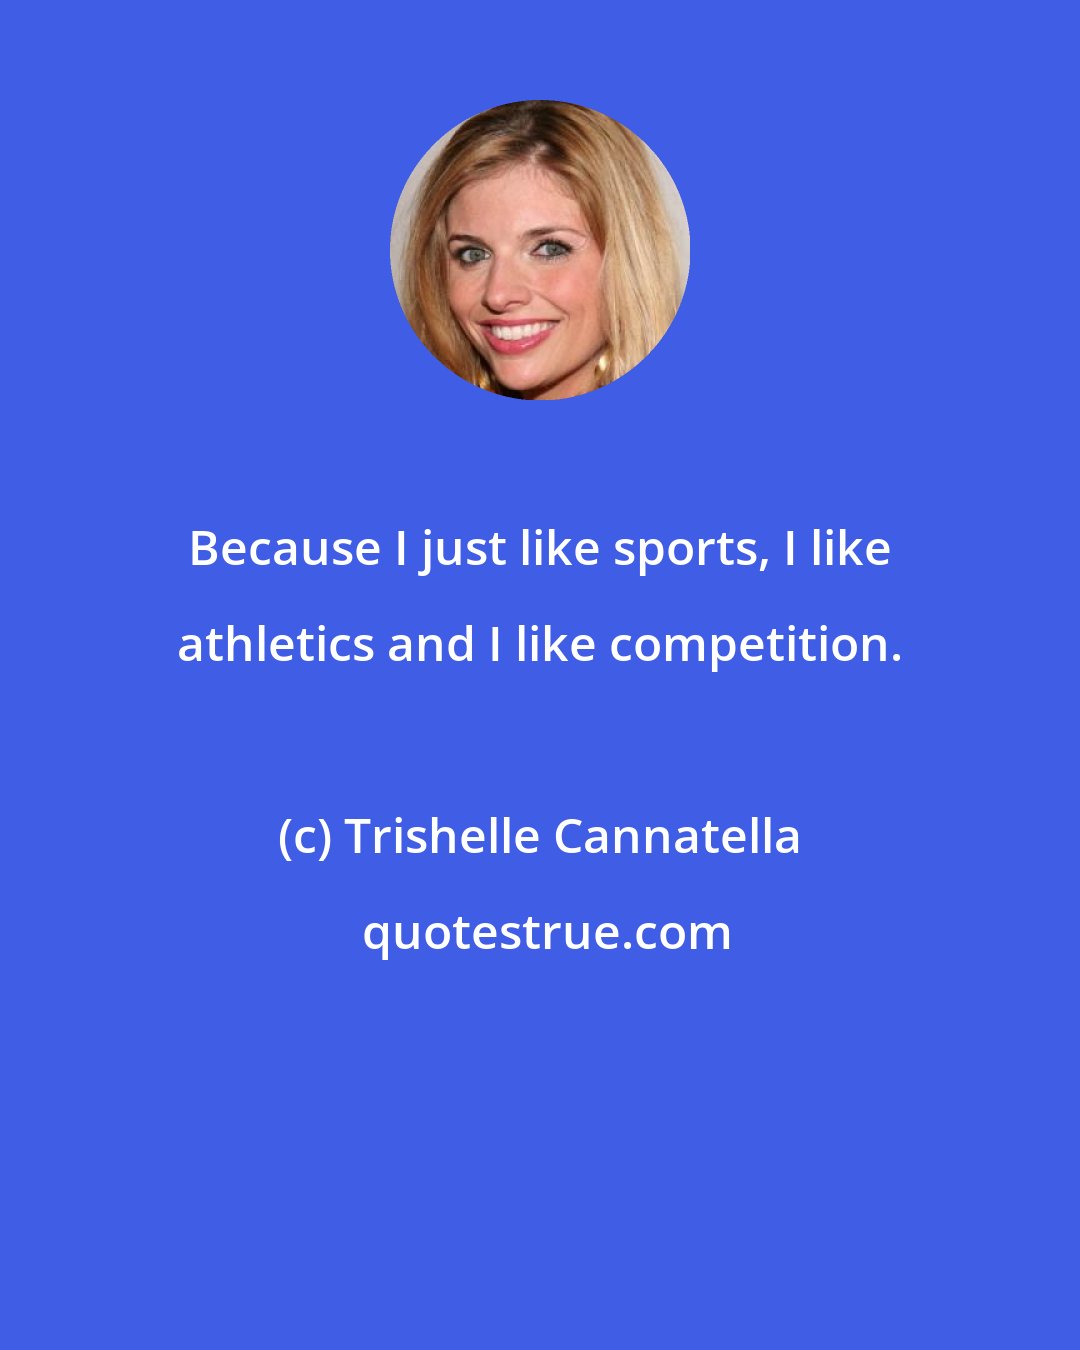 Trishelle Cannatella: Because I just like sports, I like athletics and I like competition.